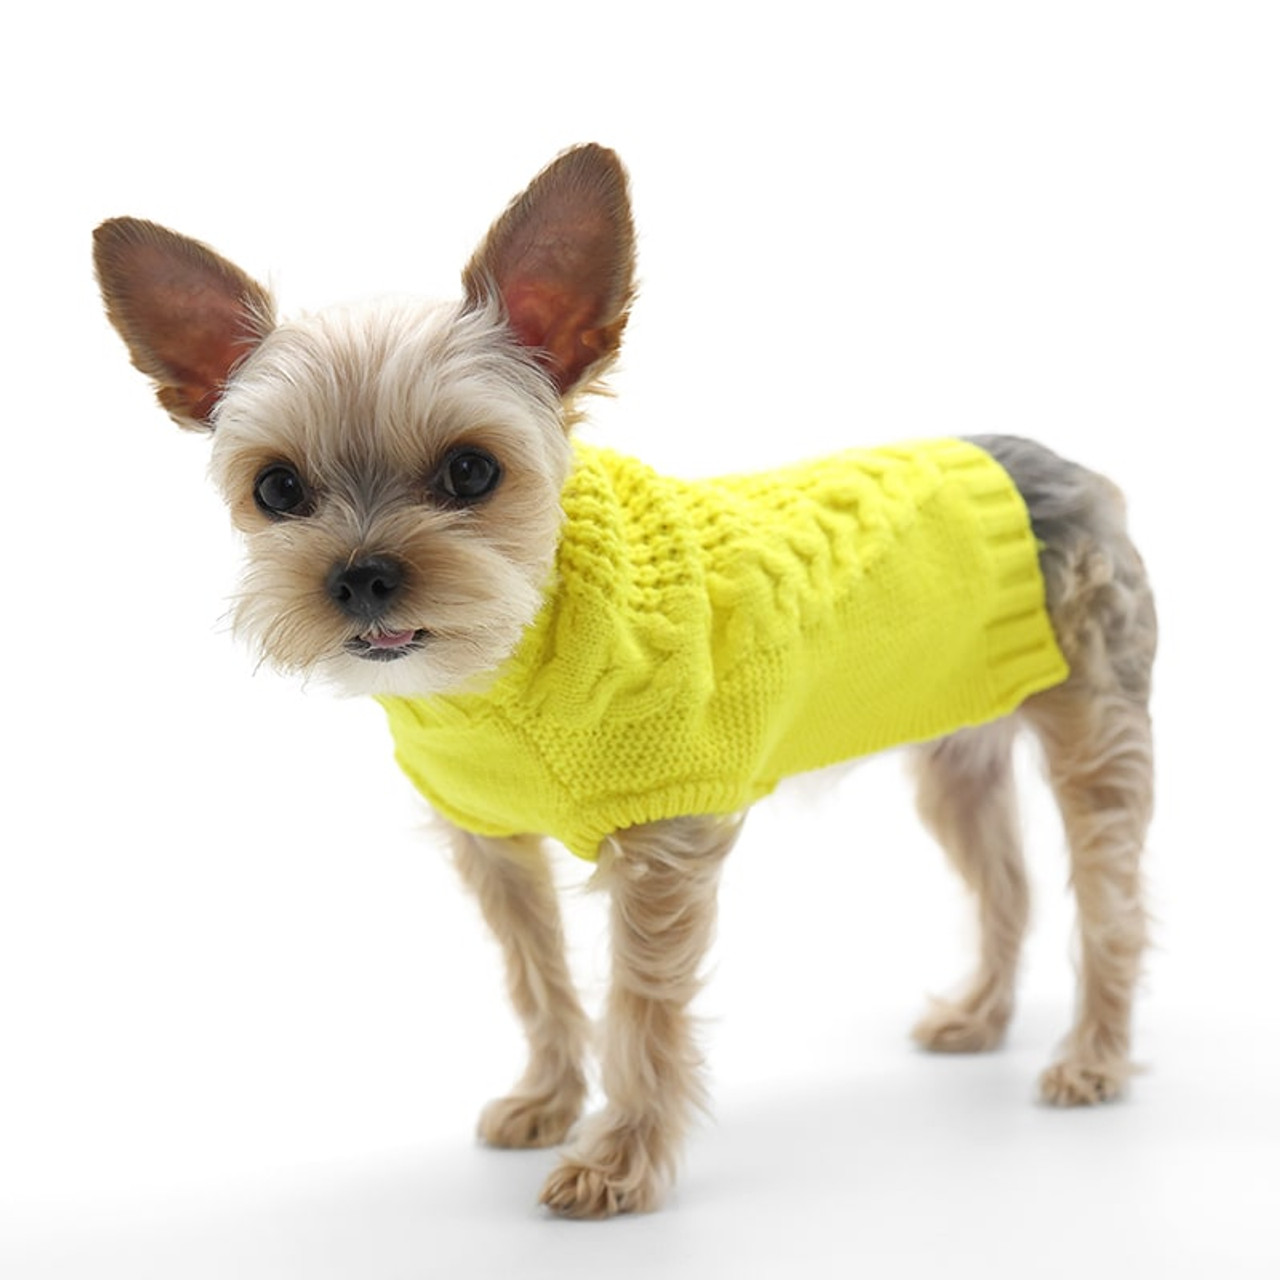 Dog Dress Pet Dress Yellow Dog Dress Yellow Pet Dress Dog 